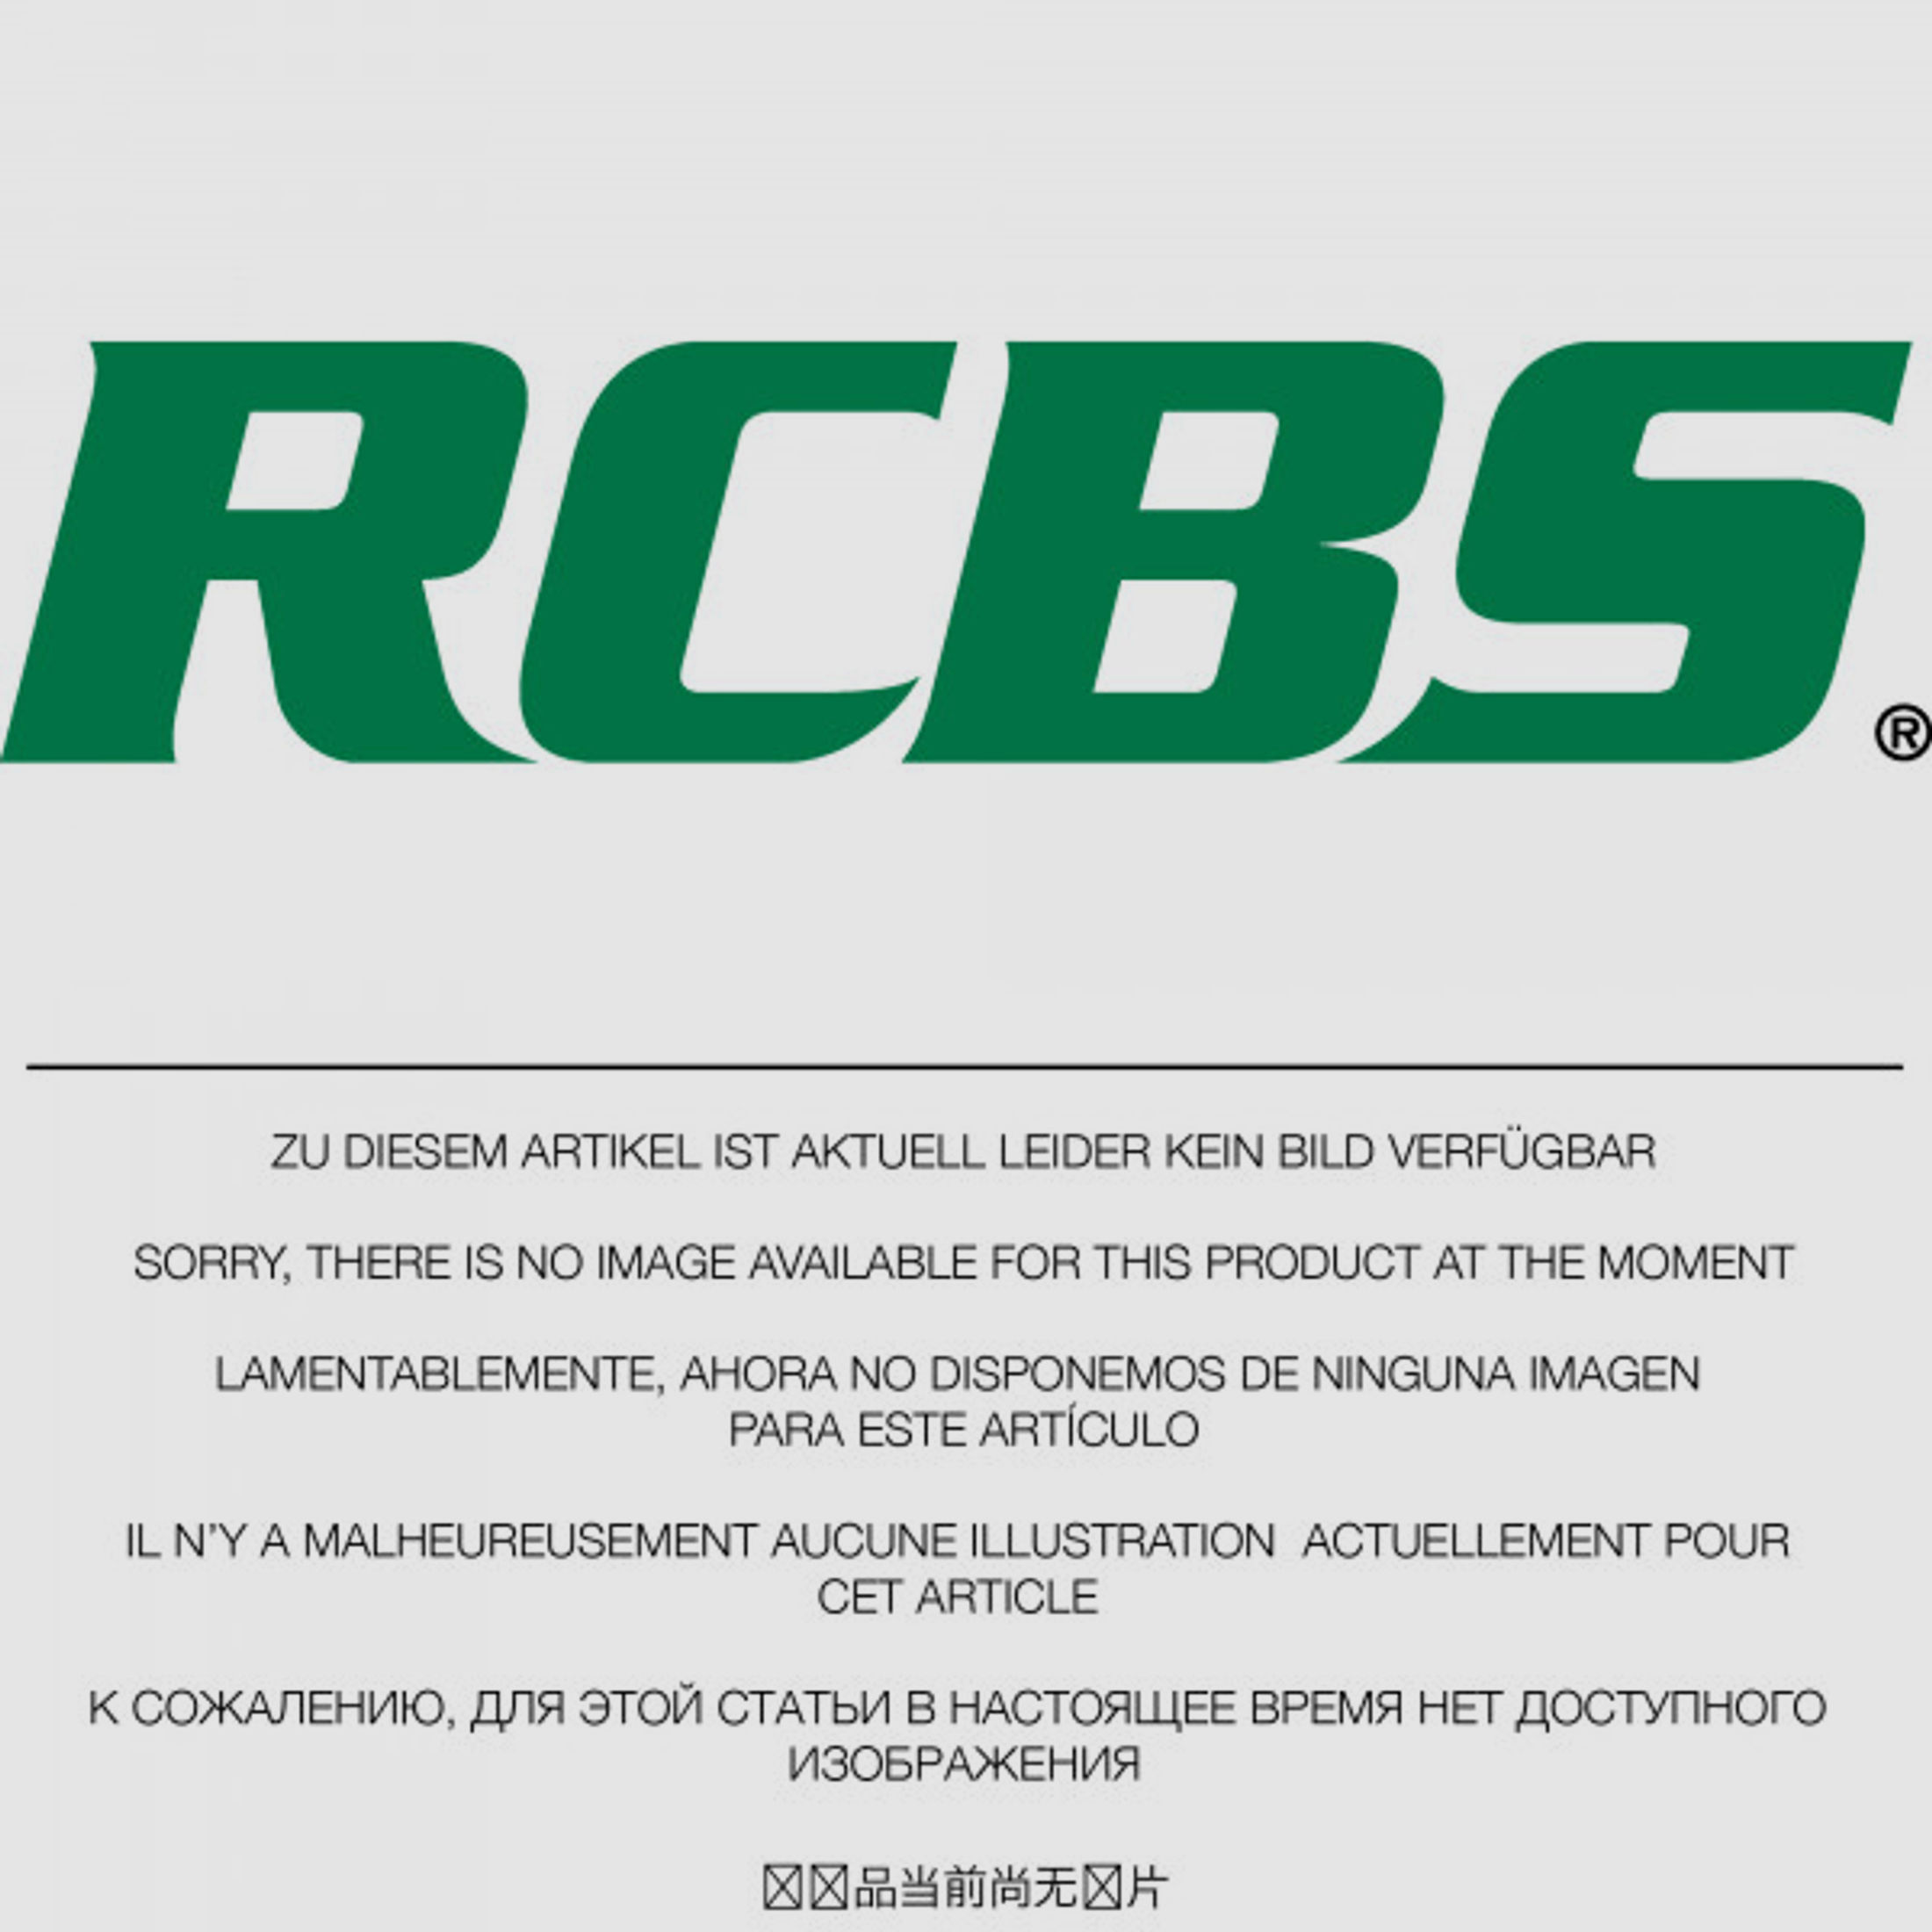 RCBS Lube-A-Matic Top Punch Geschoss Setzstempel Nr. 554 #85554